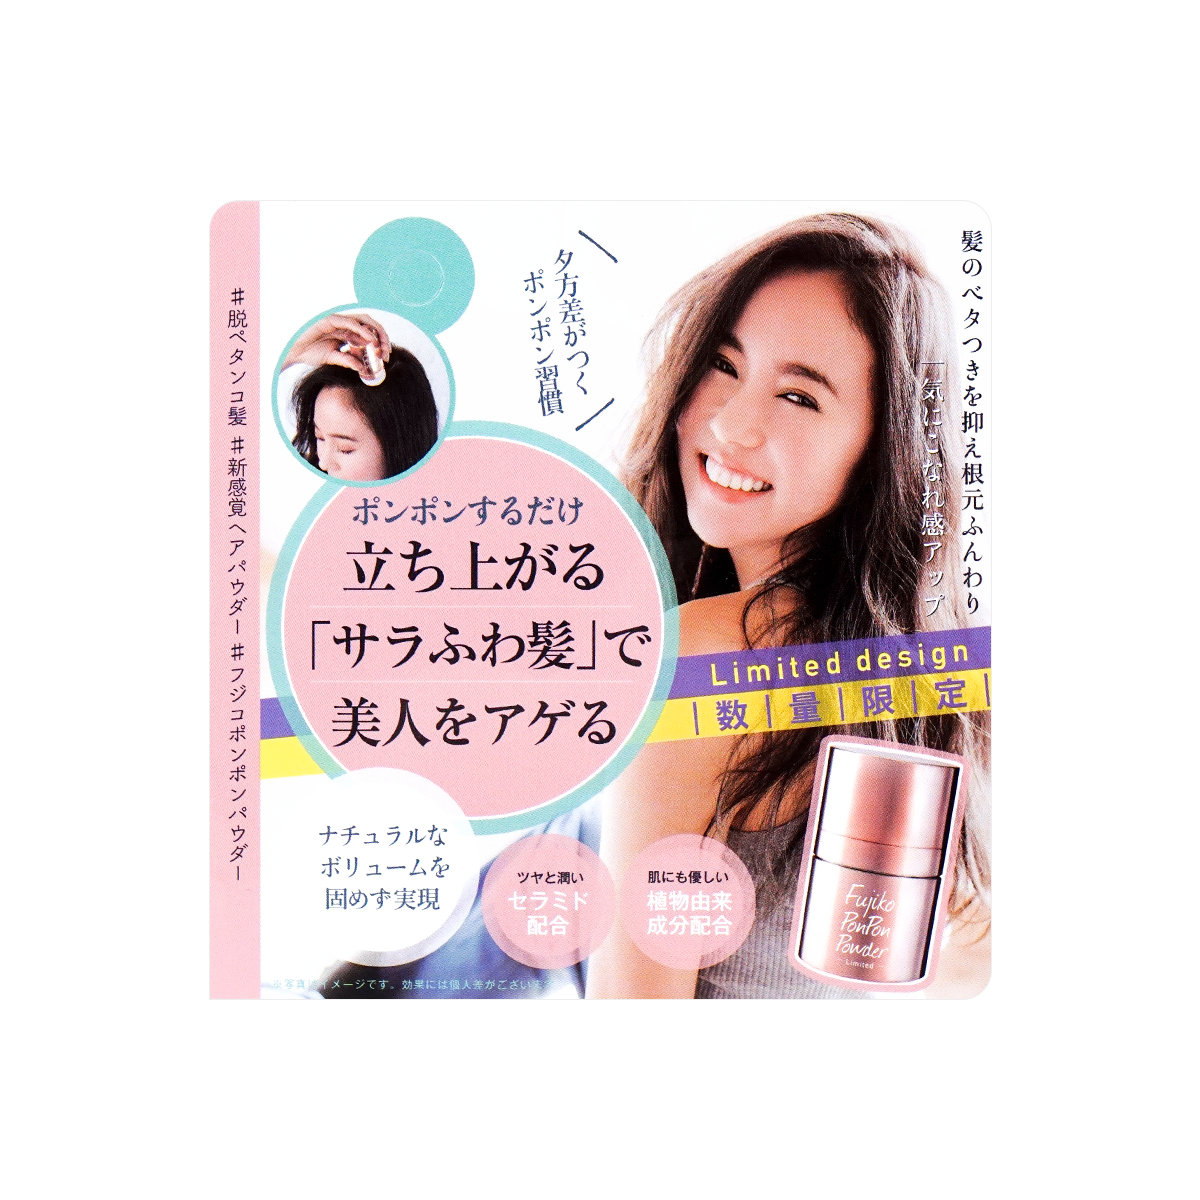 FUJIKO - Pon Pon Hair Powder Natural Volume 8.5g (RoseGold Limited Edition)